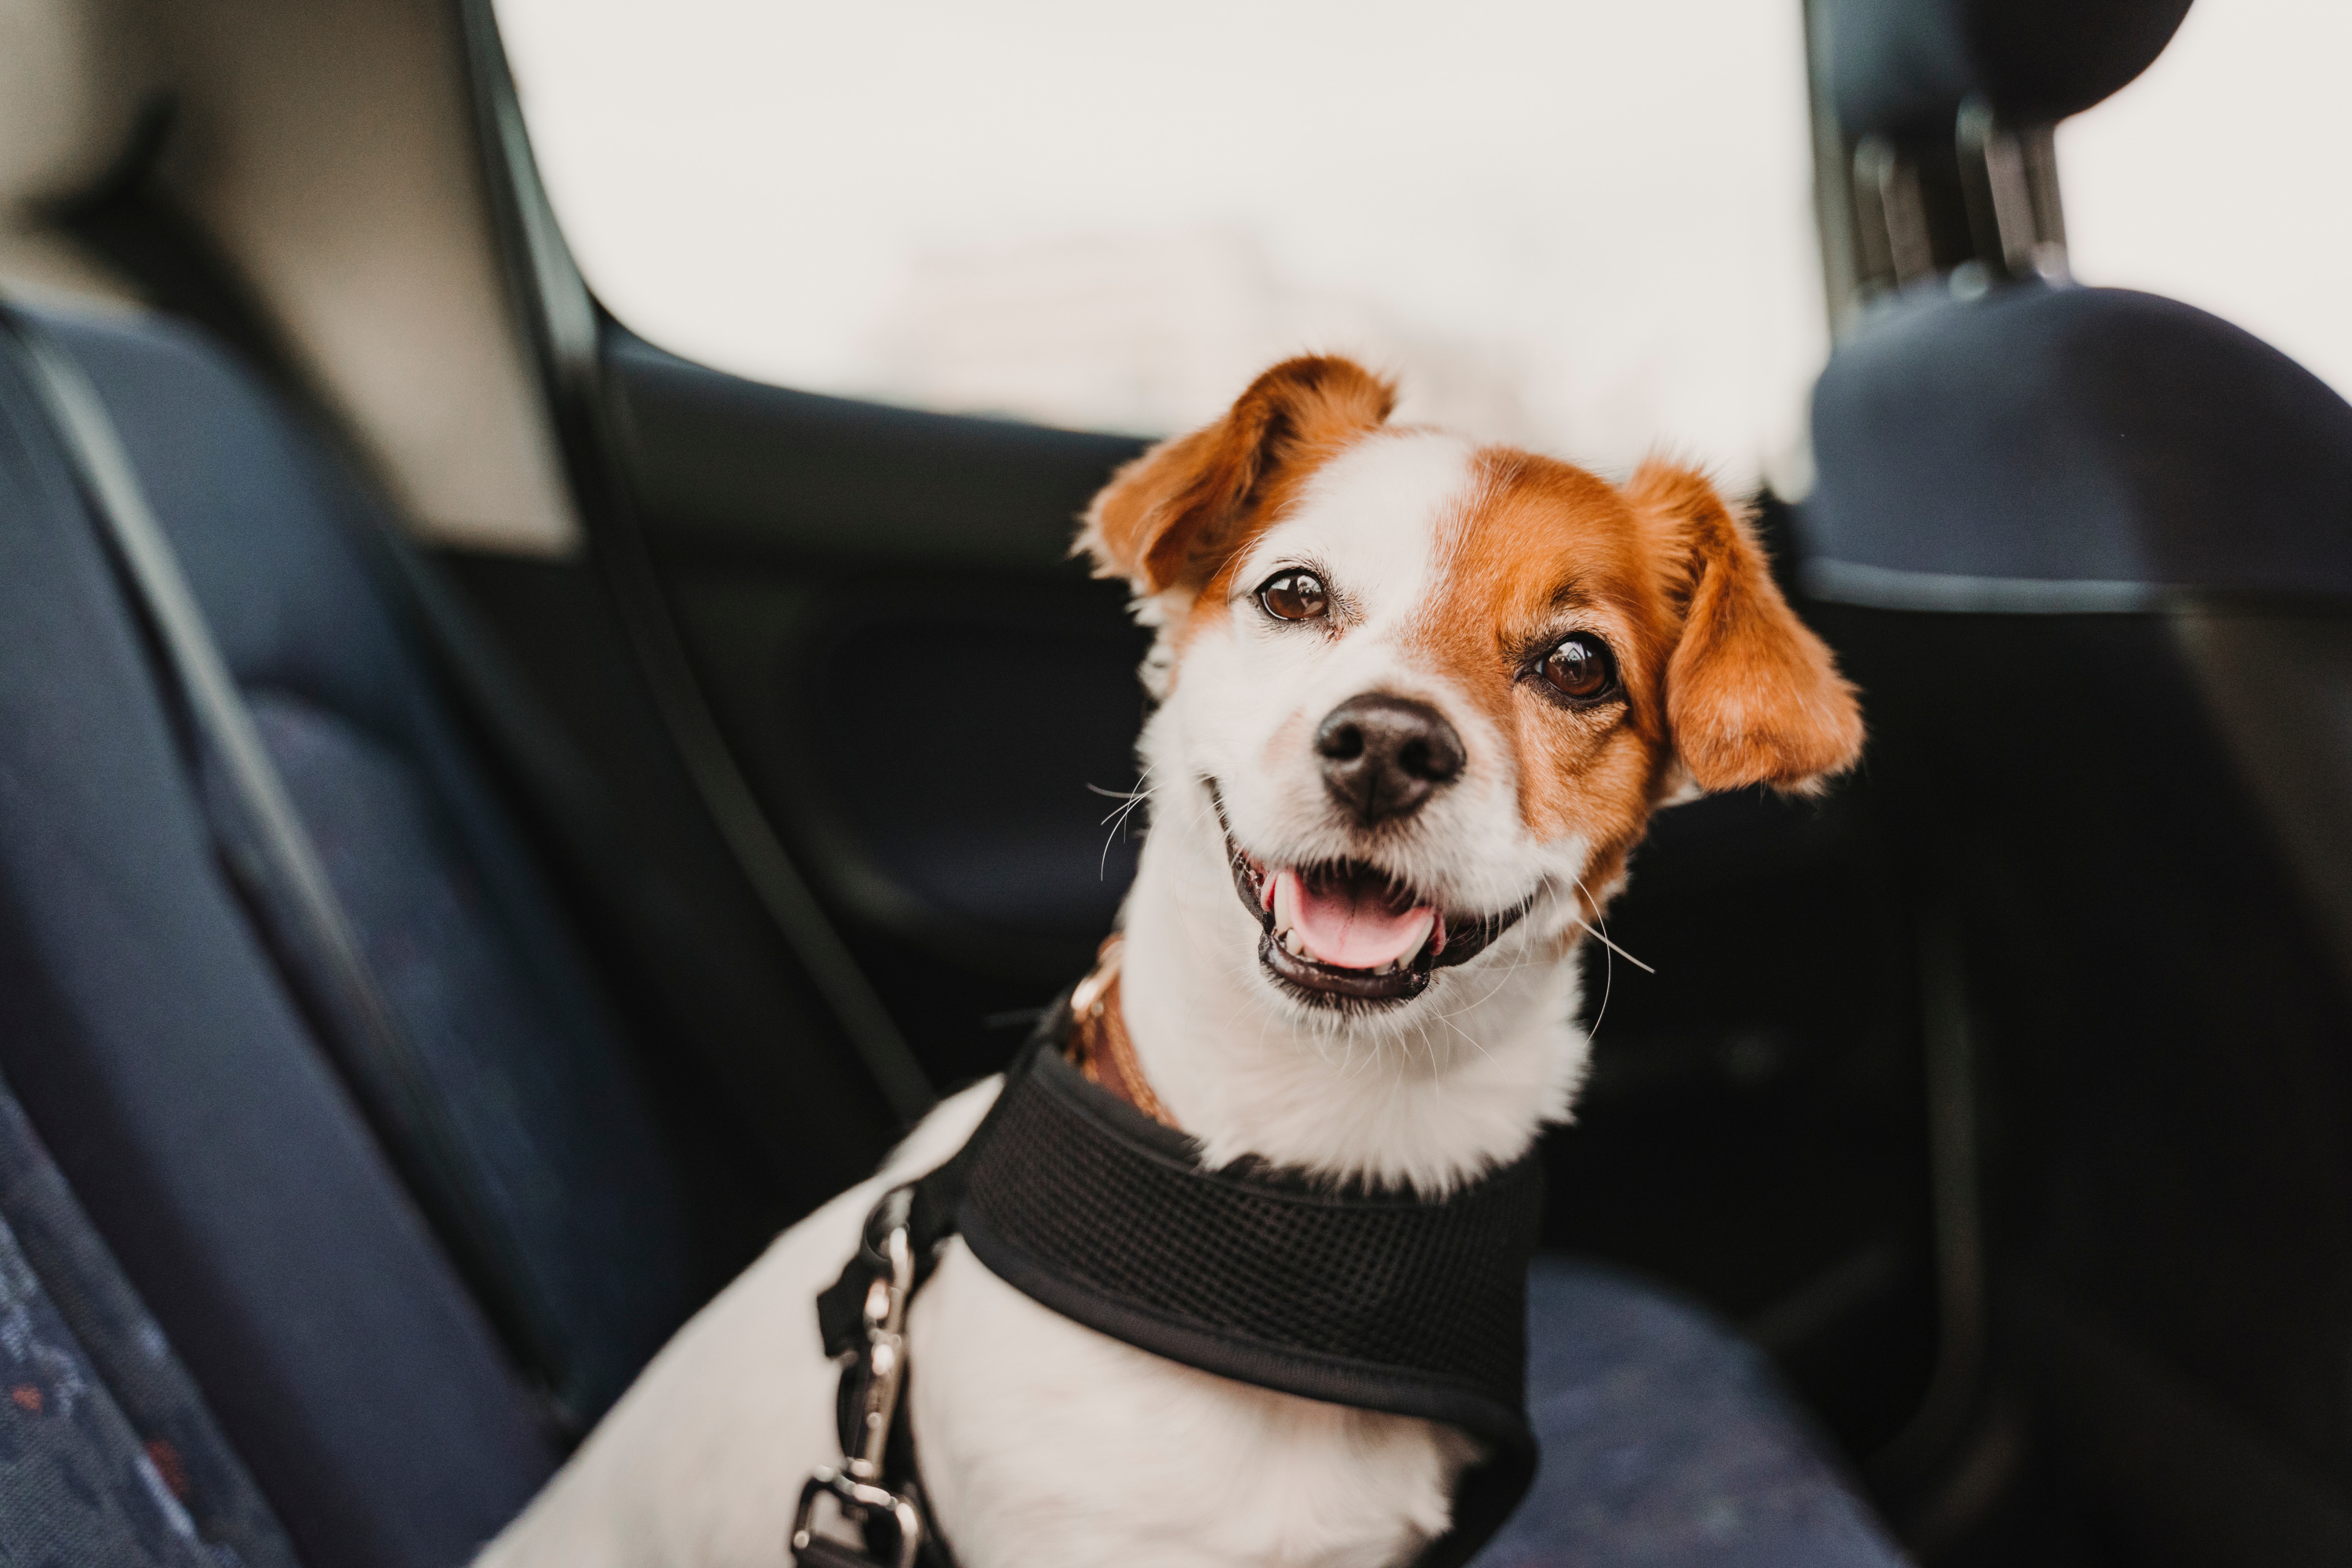 La sécurité en voiture avec son chien! Tout ce que vous devez savoir.